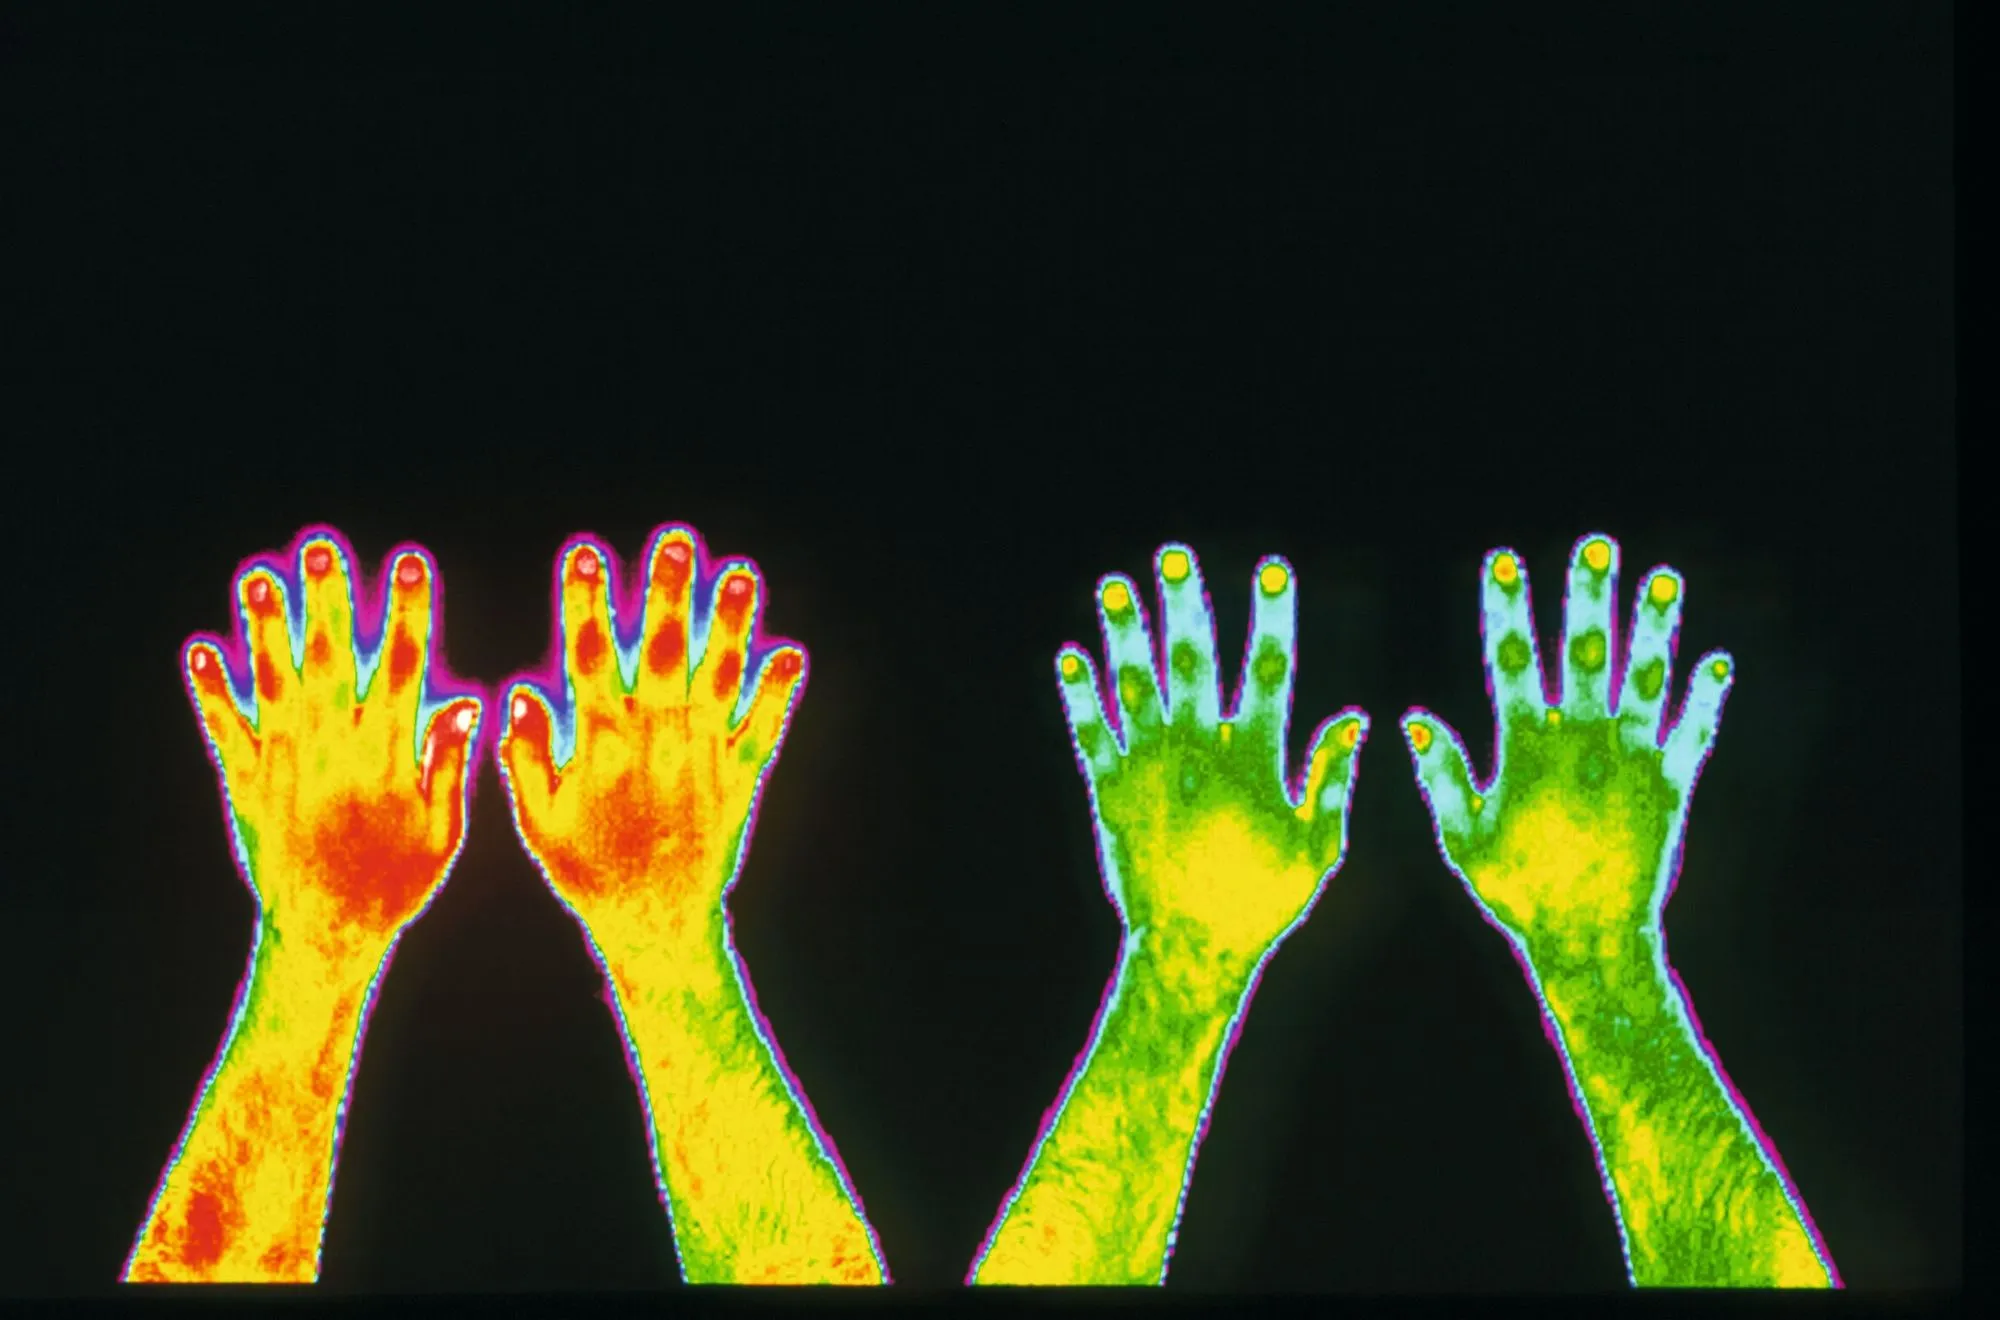 Imagerie infrarouge des mains d'un fumeur